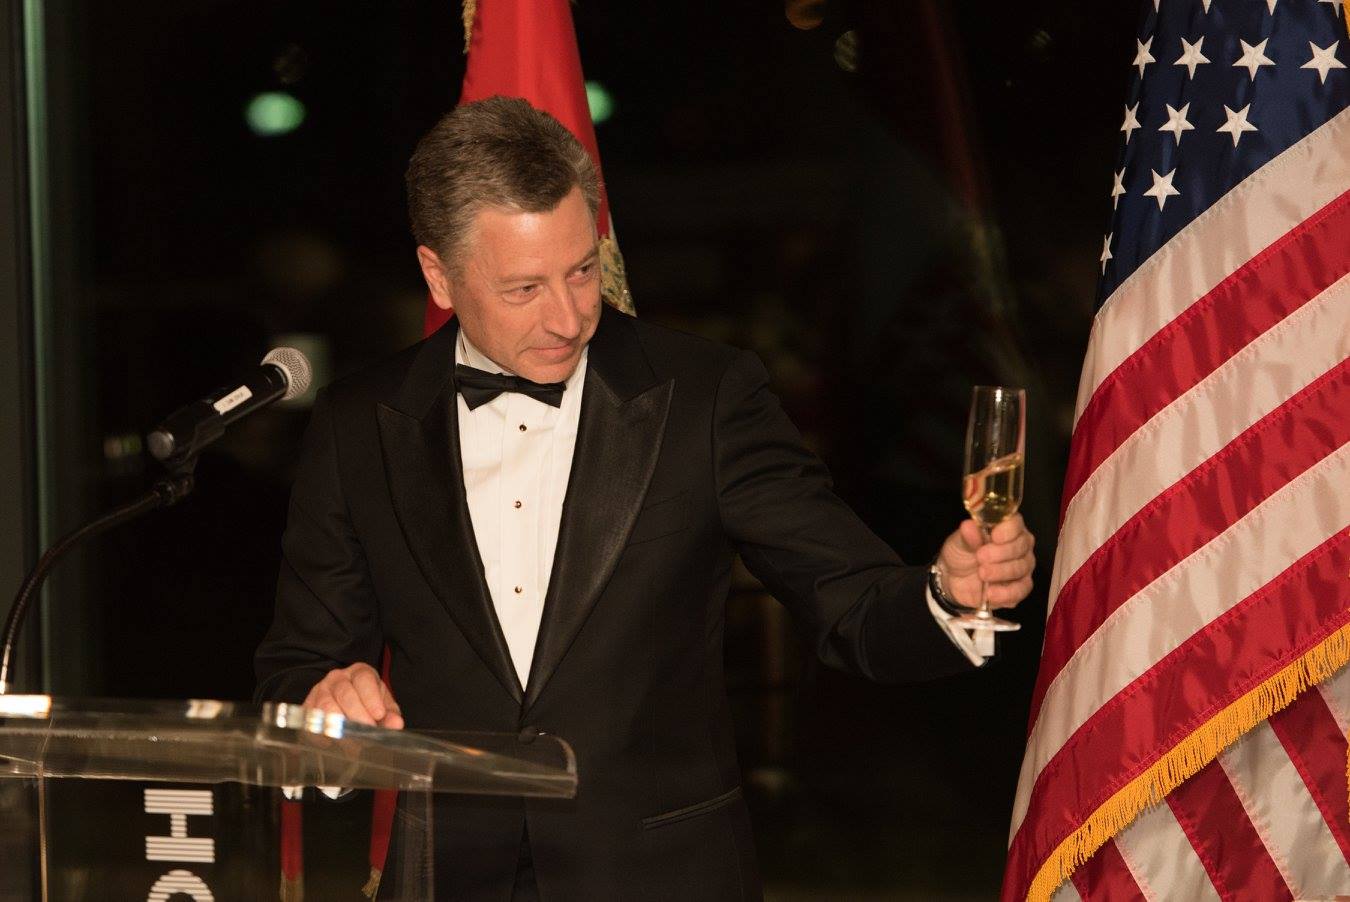 Ambassador Kurt Volker delivering a toast